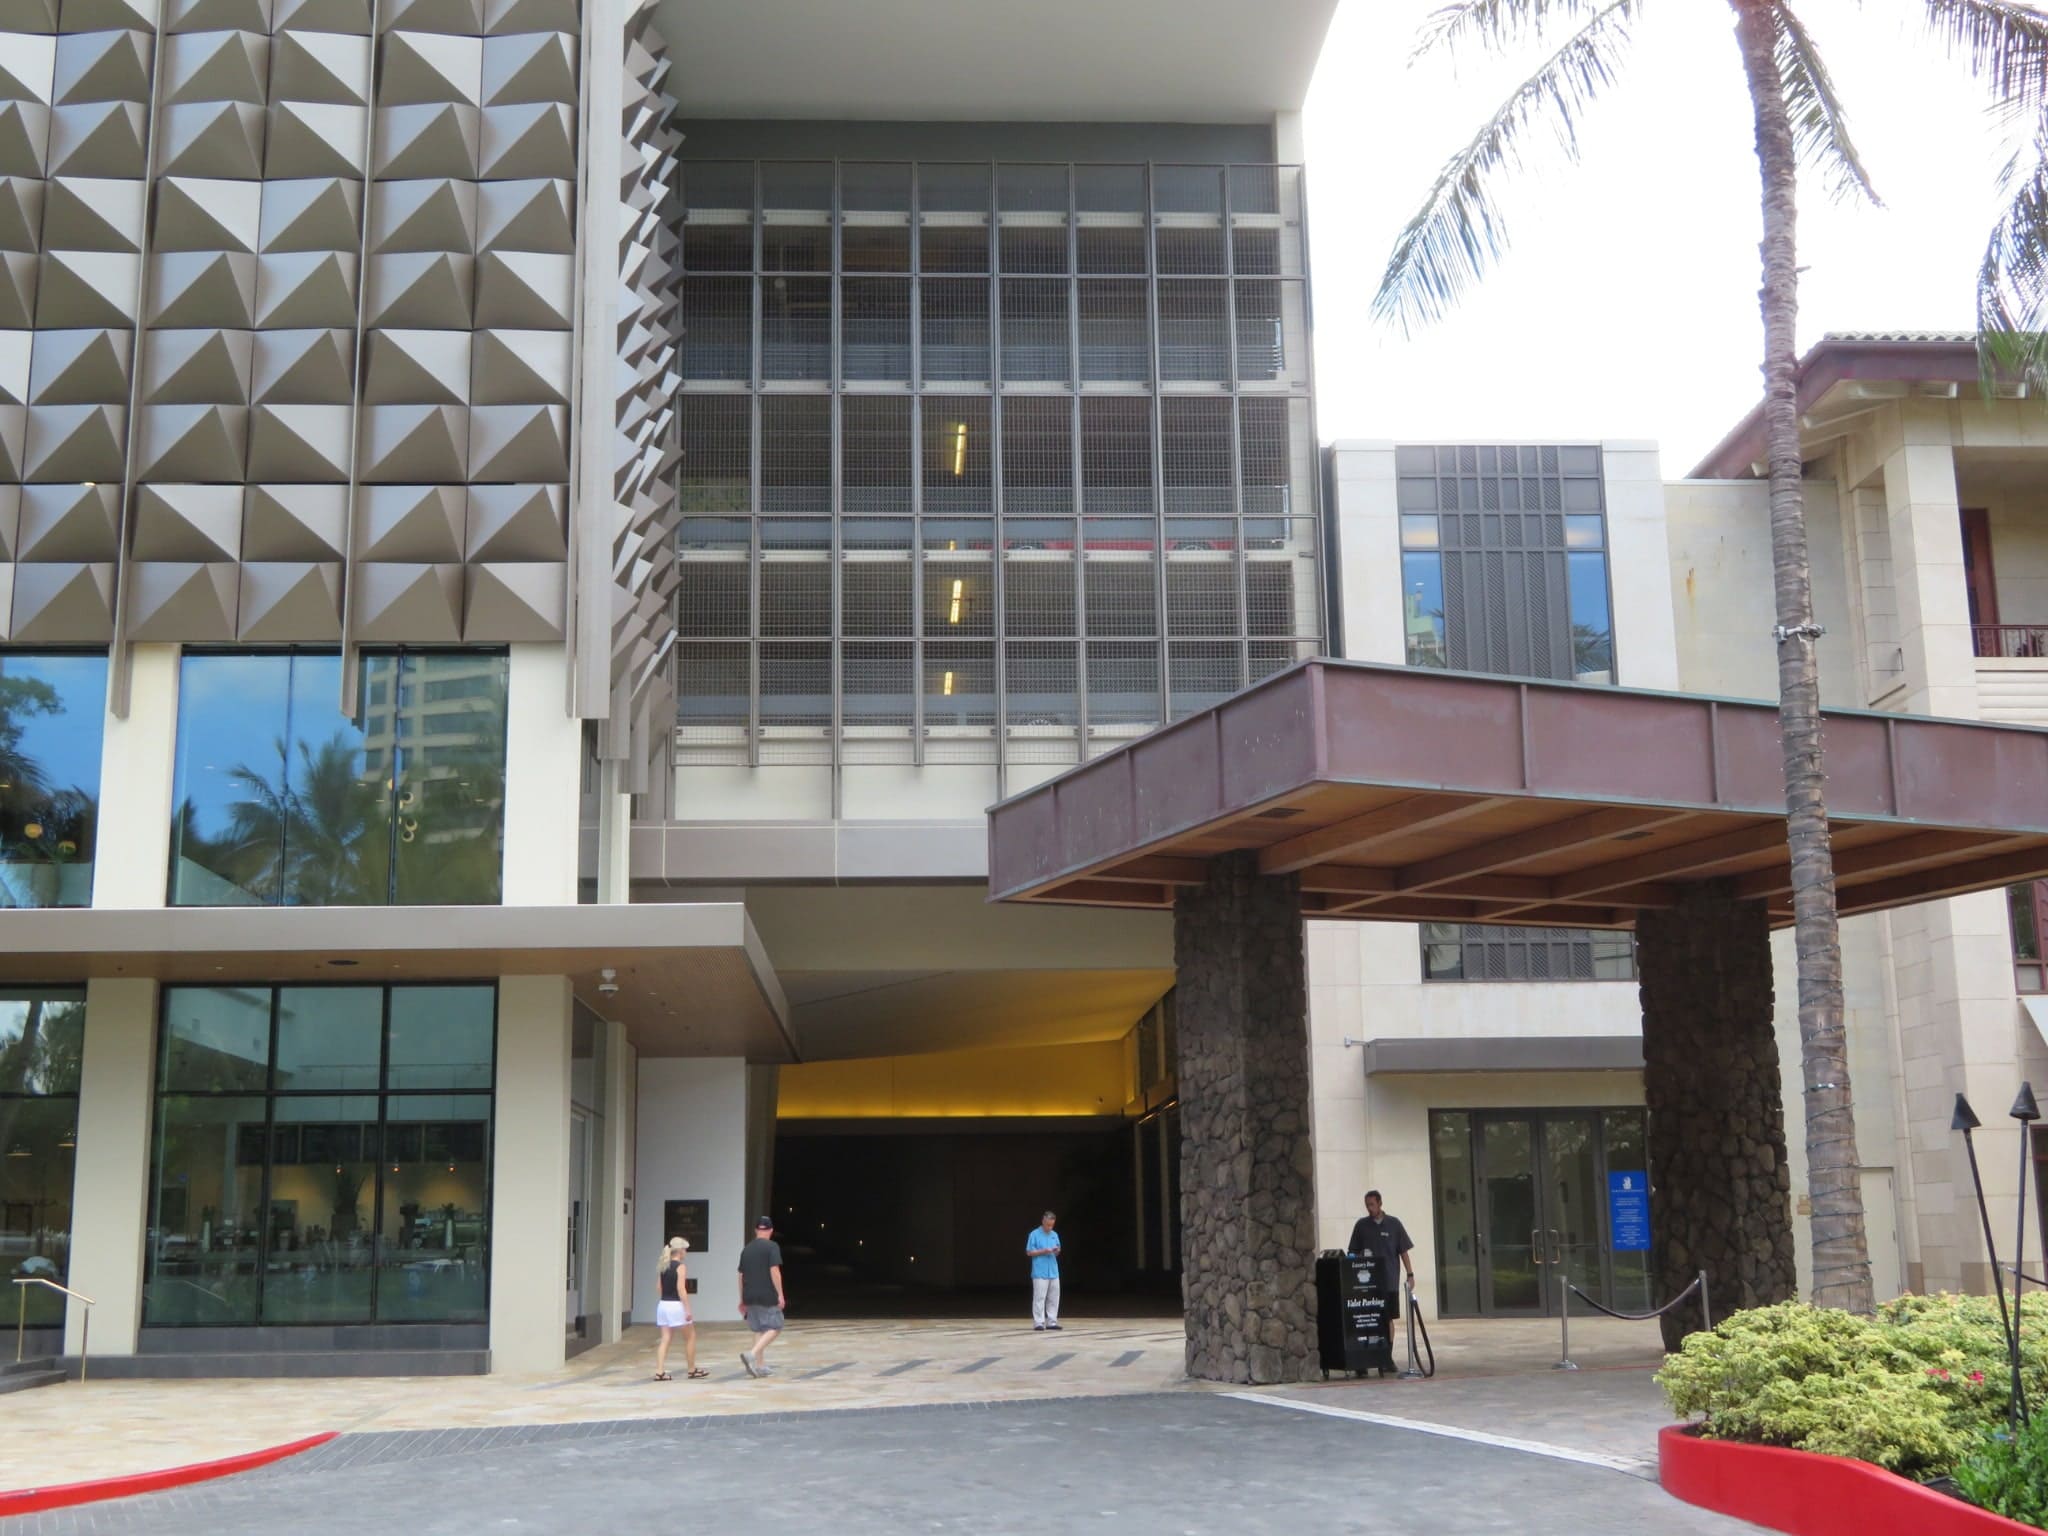 ザ・リッツ・カールトン・レジデンス・ワイキキ / The Ritz-Carlton Residences Waikiki Beach